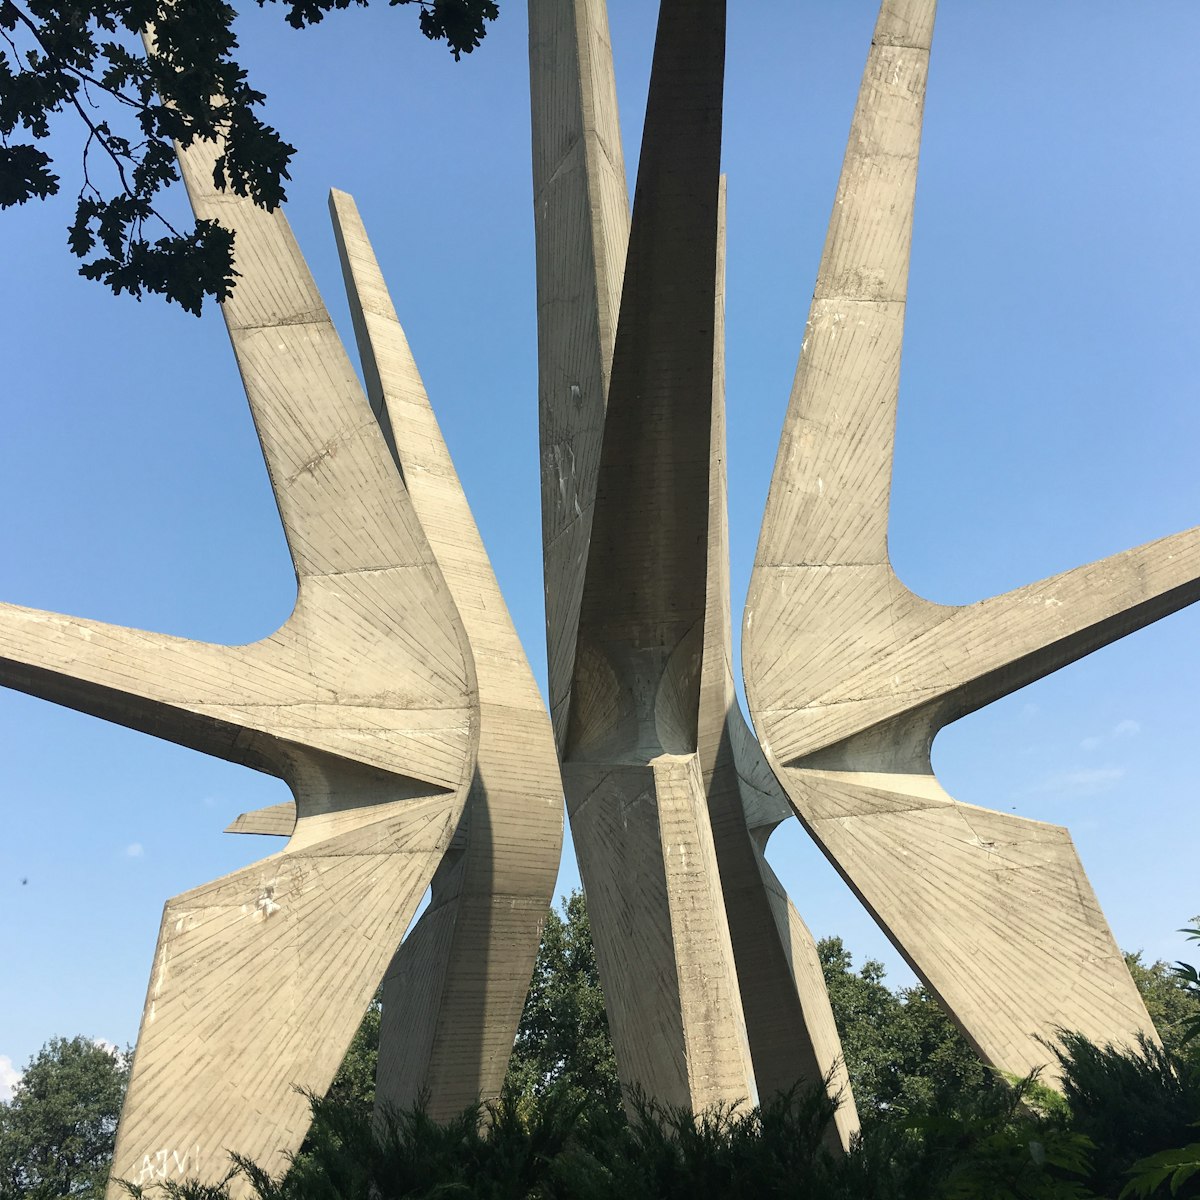 Kosmaj Memorial